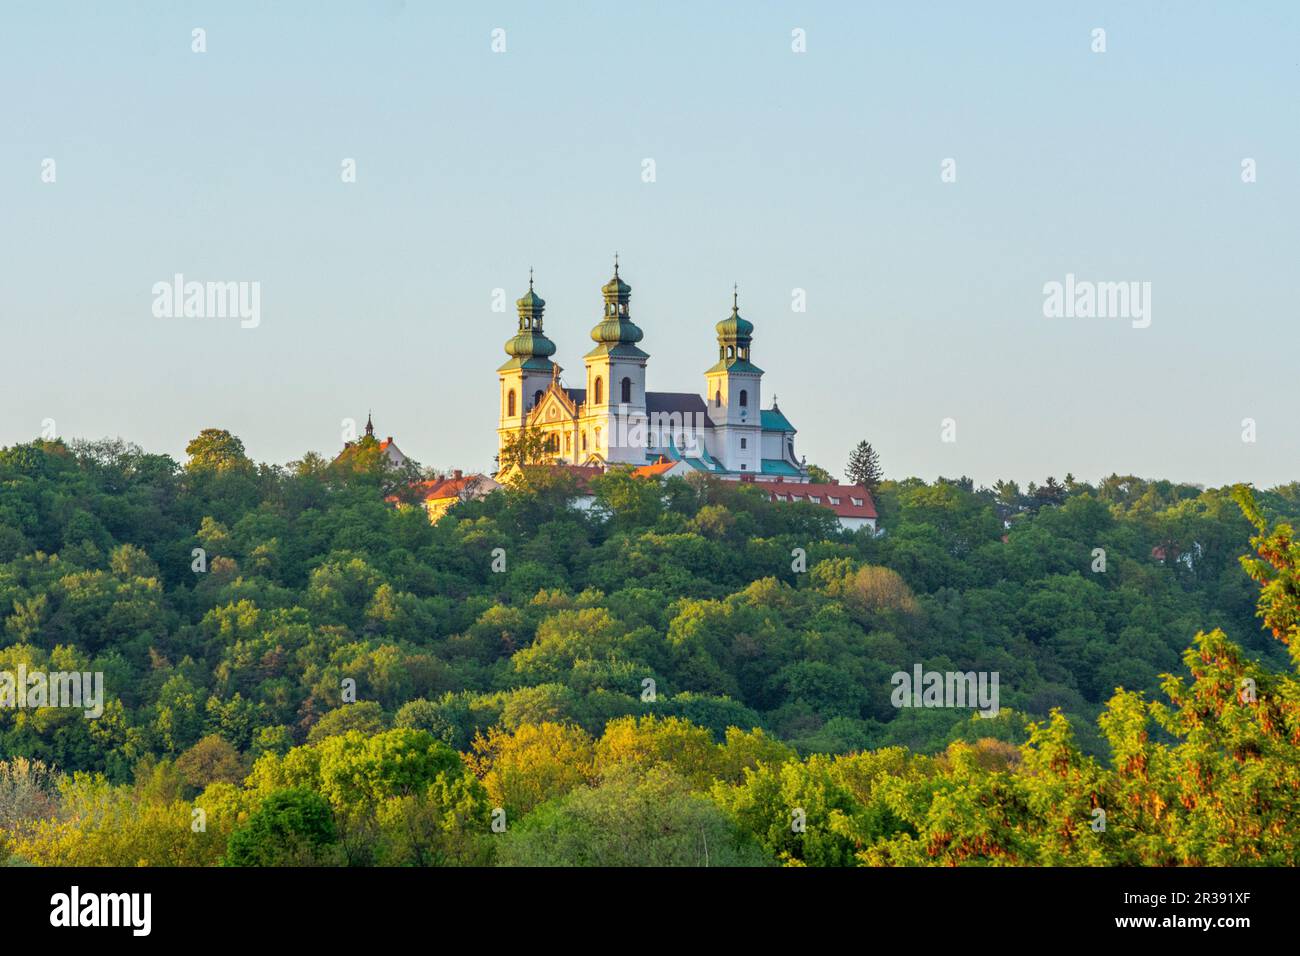 Monastère de Cracovie vue de loin, Pologne. Banque D'Images